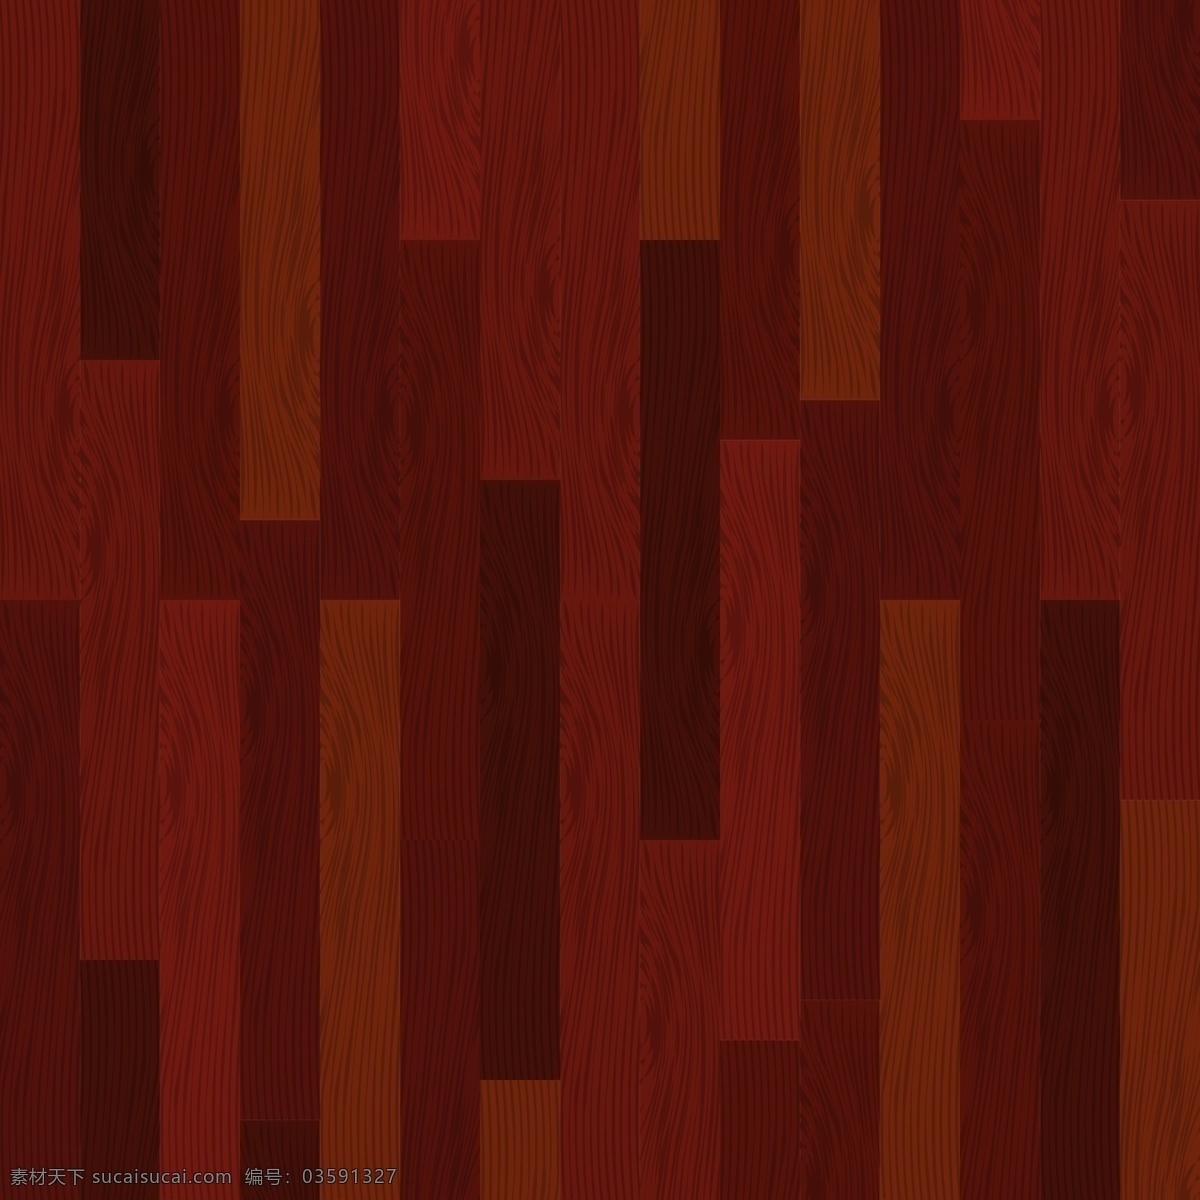 实木 复合地板 背景 的背景下 木材 纹理 木材纹理 木地板 木 纹理背景 木制背景 背景纹理 枫木 木质纹理 实木地板 实木复合地板 硬木 松木 红色